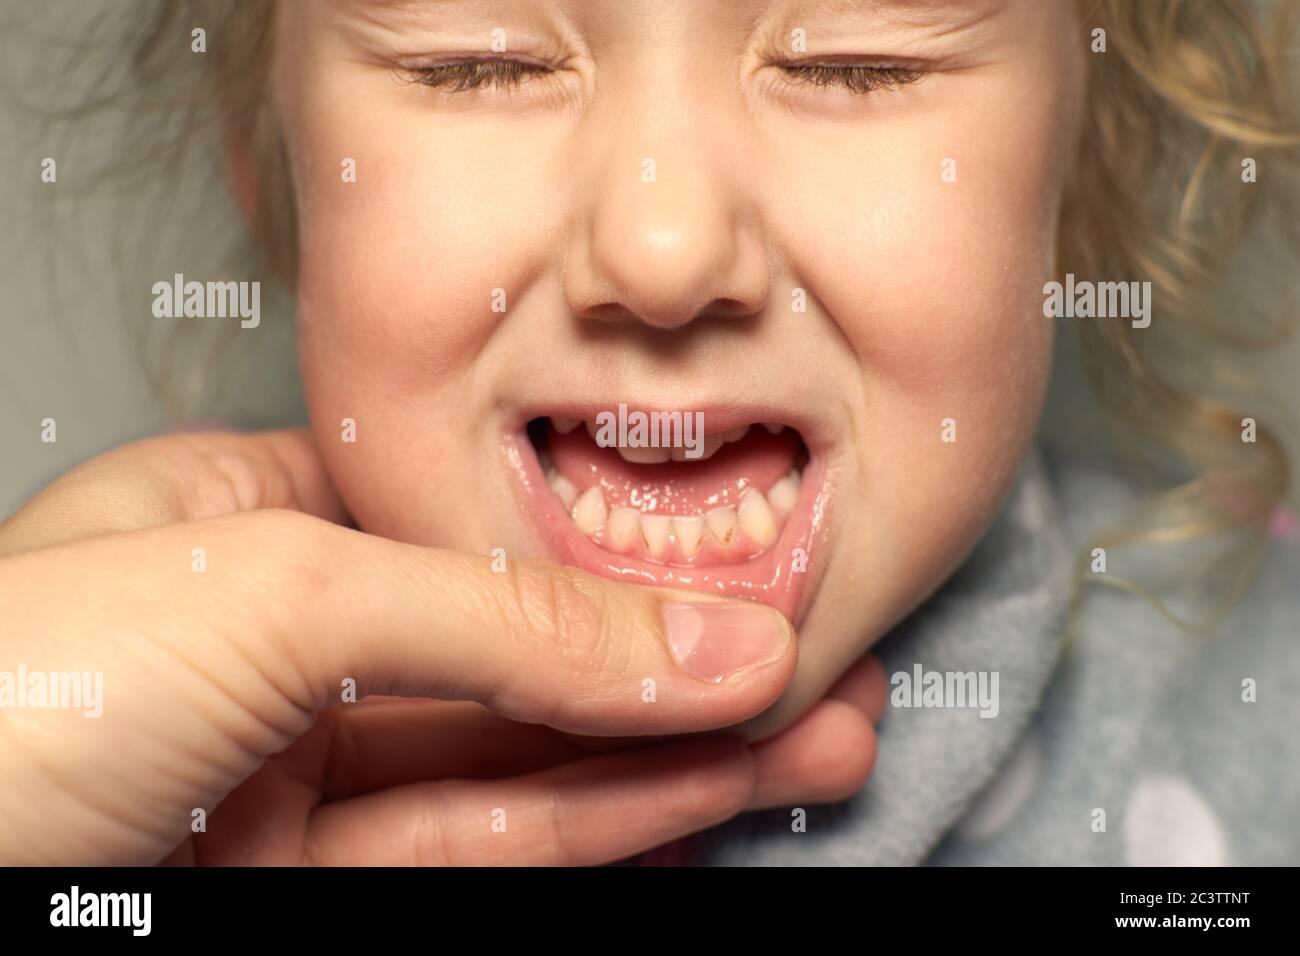 Gros plan des dents malsaines de bébé. Fille bouche ouverte montrant carie dents pourriture, mauvaises dents. Banque D'Images